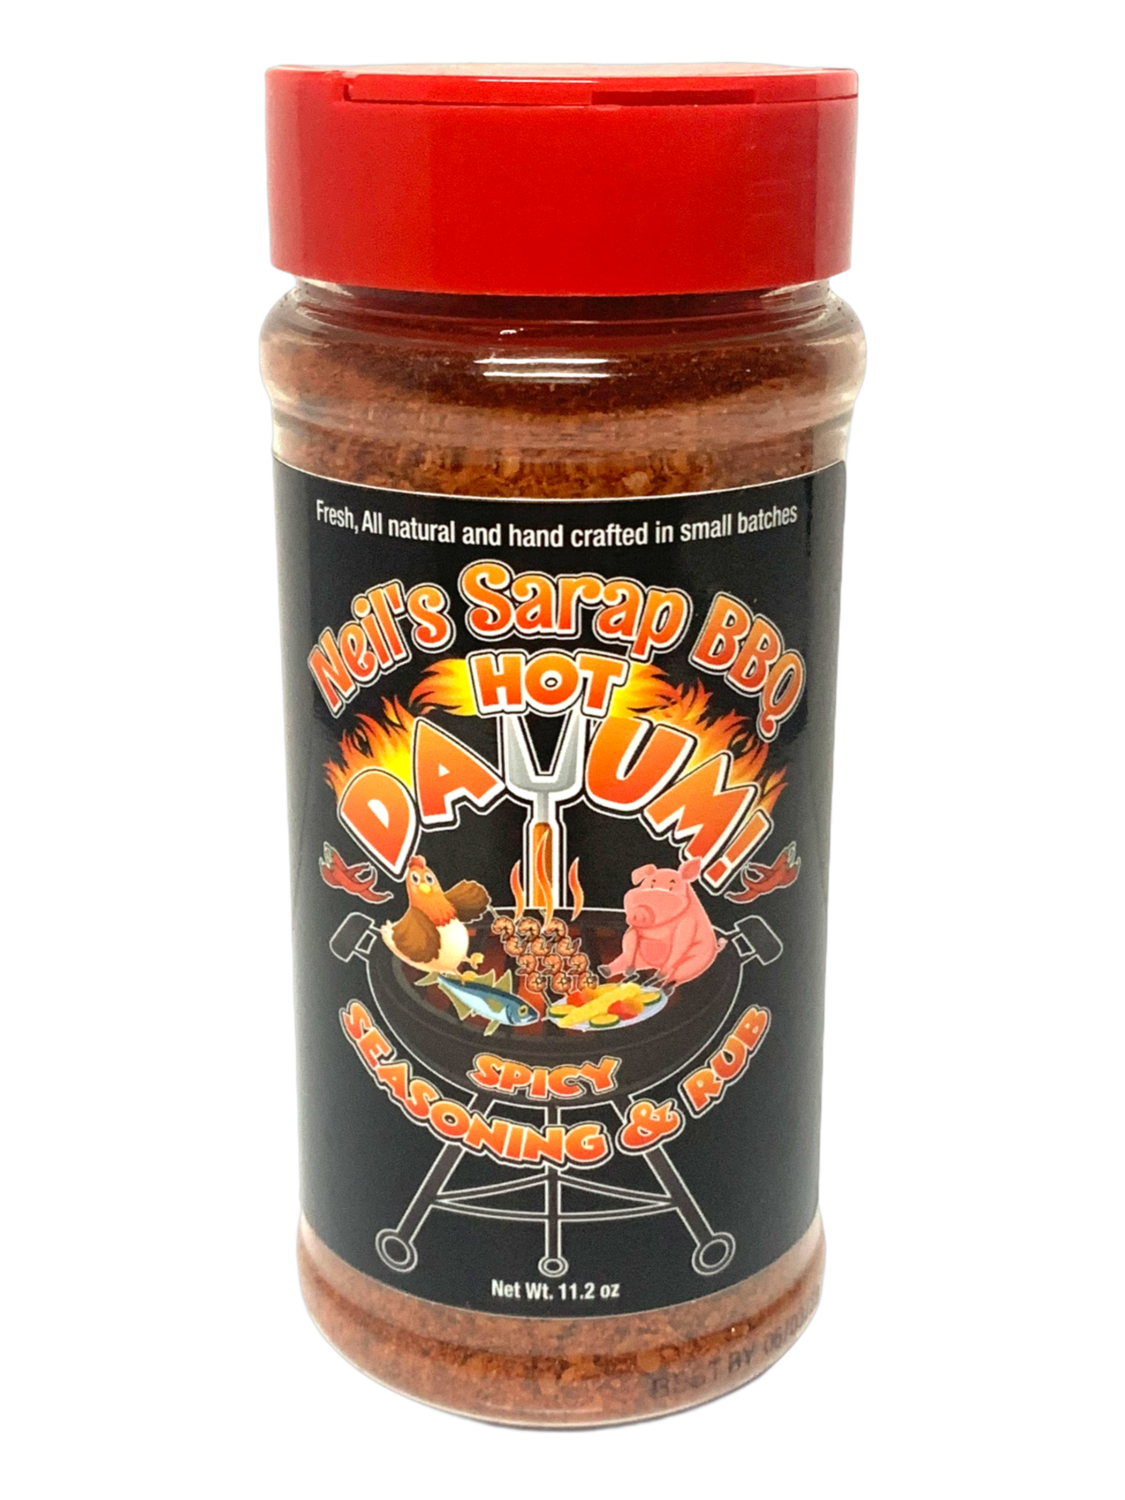 Neil's Sarap BBQ - Hot Dayum - Seasoning & Rub - 317g (11.2 oz)